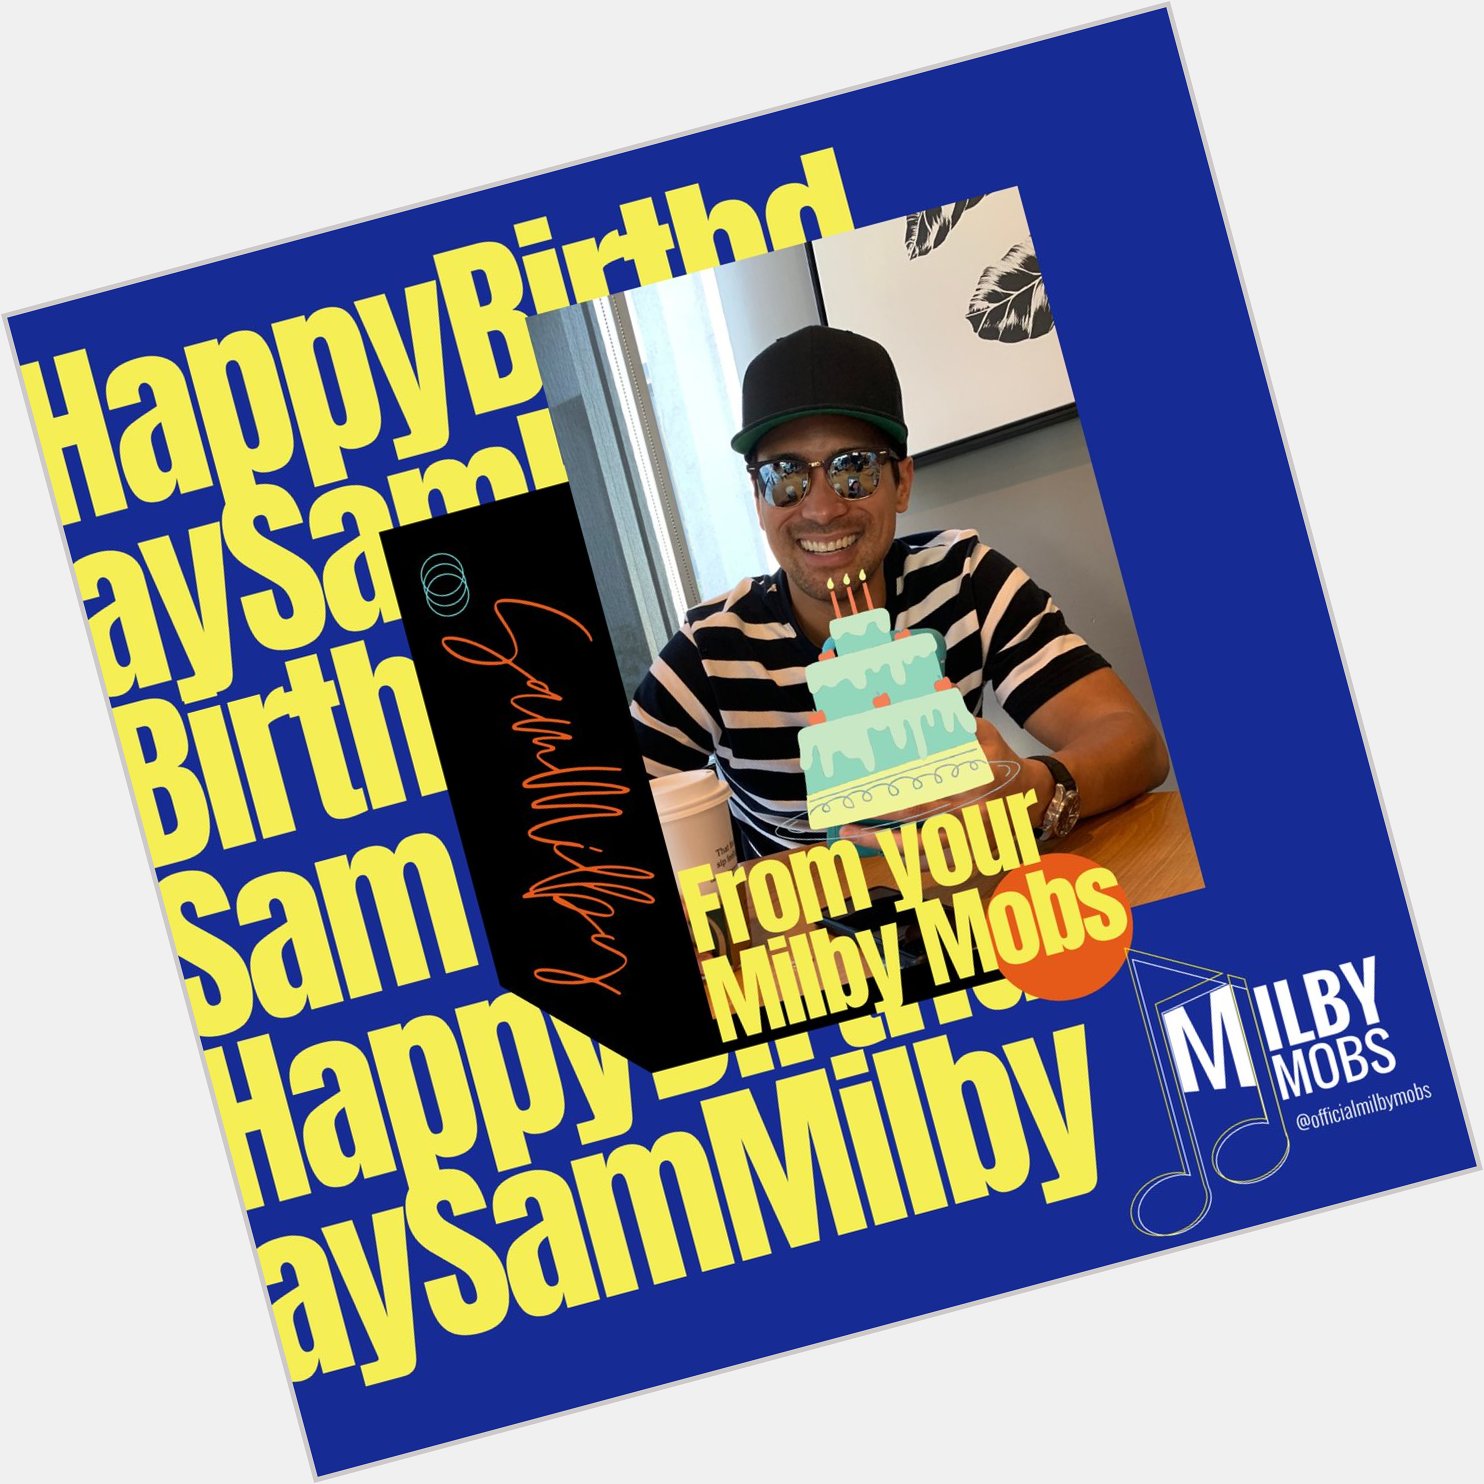 Happy Birthday Sam Milby! We love you!     